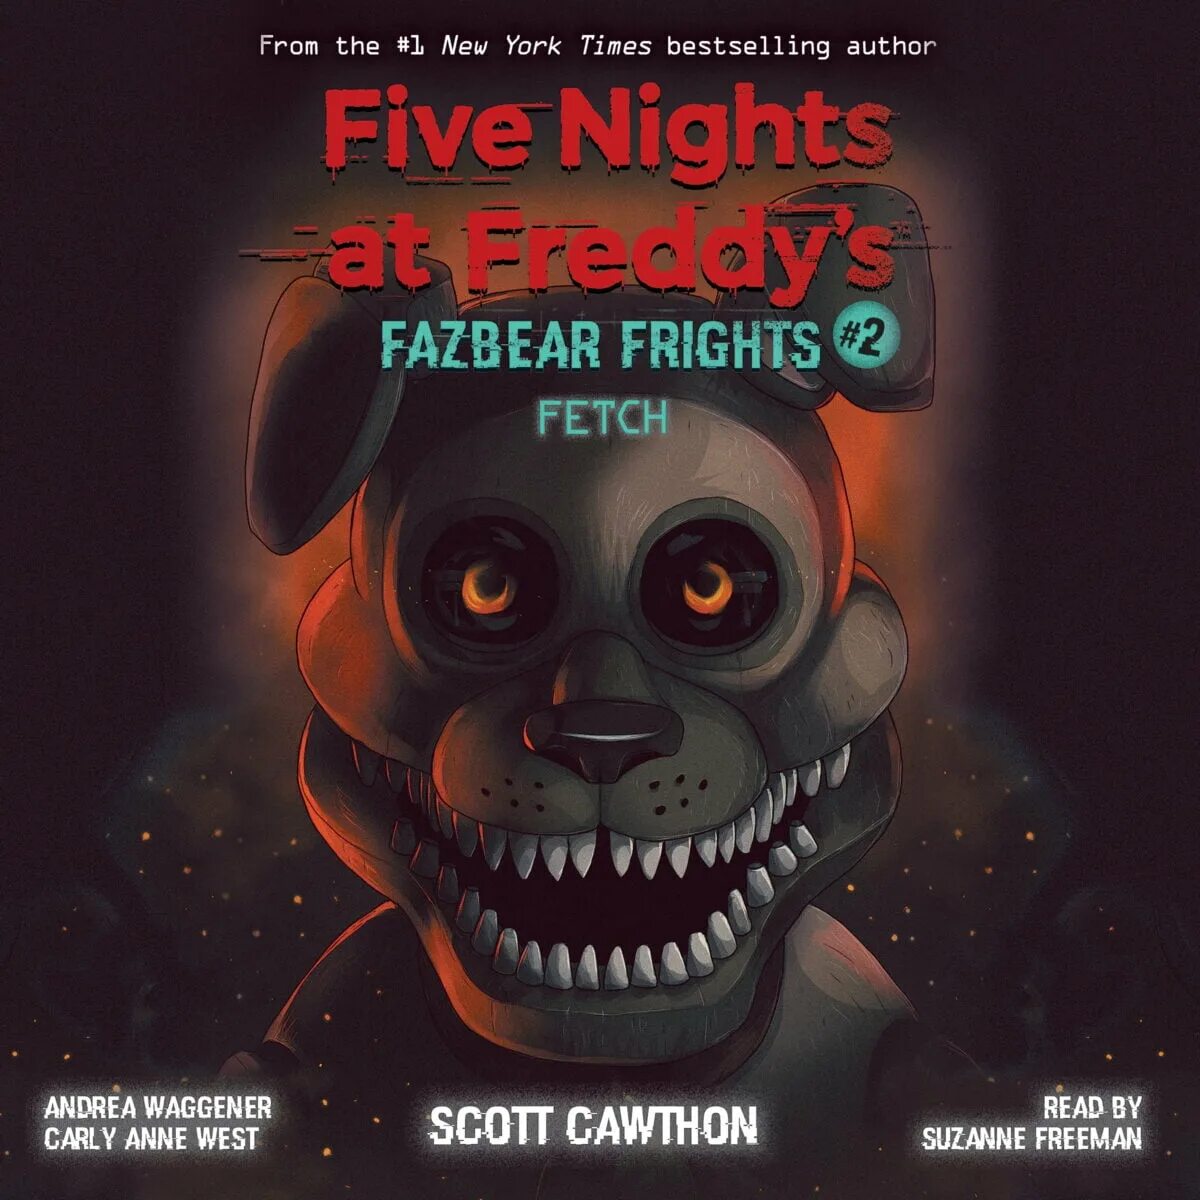 Книга Fazbear's Fright. Five Nights at Freddy s книга Fazbear Fright. Fazbear Frights книги. Книга Фредди Скотт Коутон.